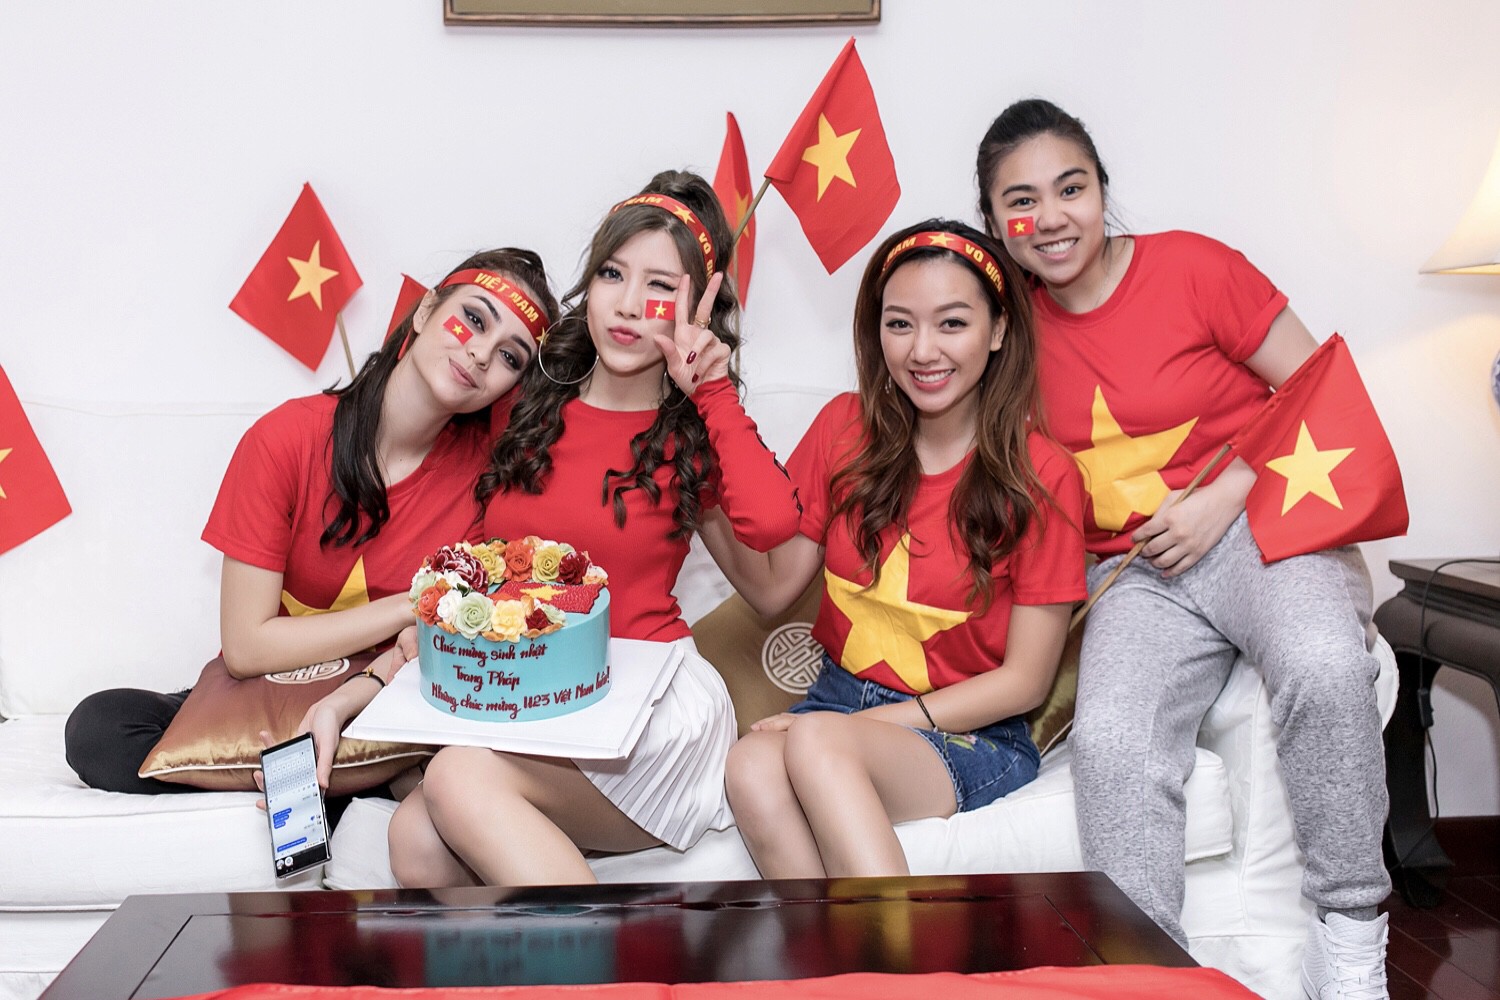 Cuồng nhiệt như Trang Pháp: Tổ chức sinh nhật kết hợp cổ vũ U23 Việt Nam - Ảnh 8.